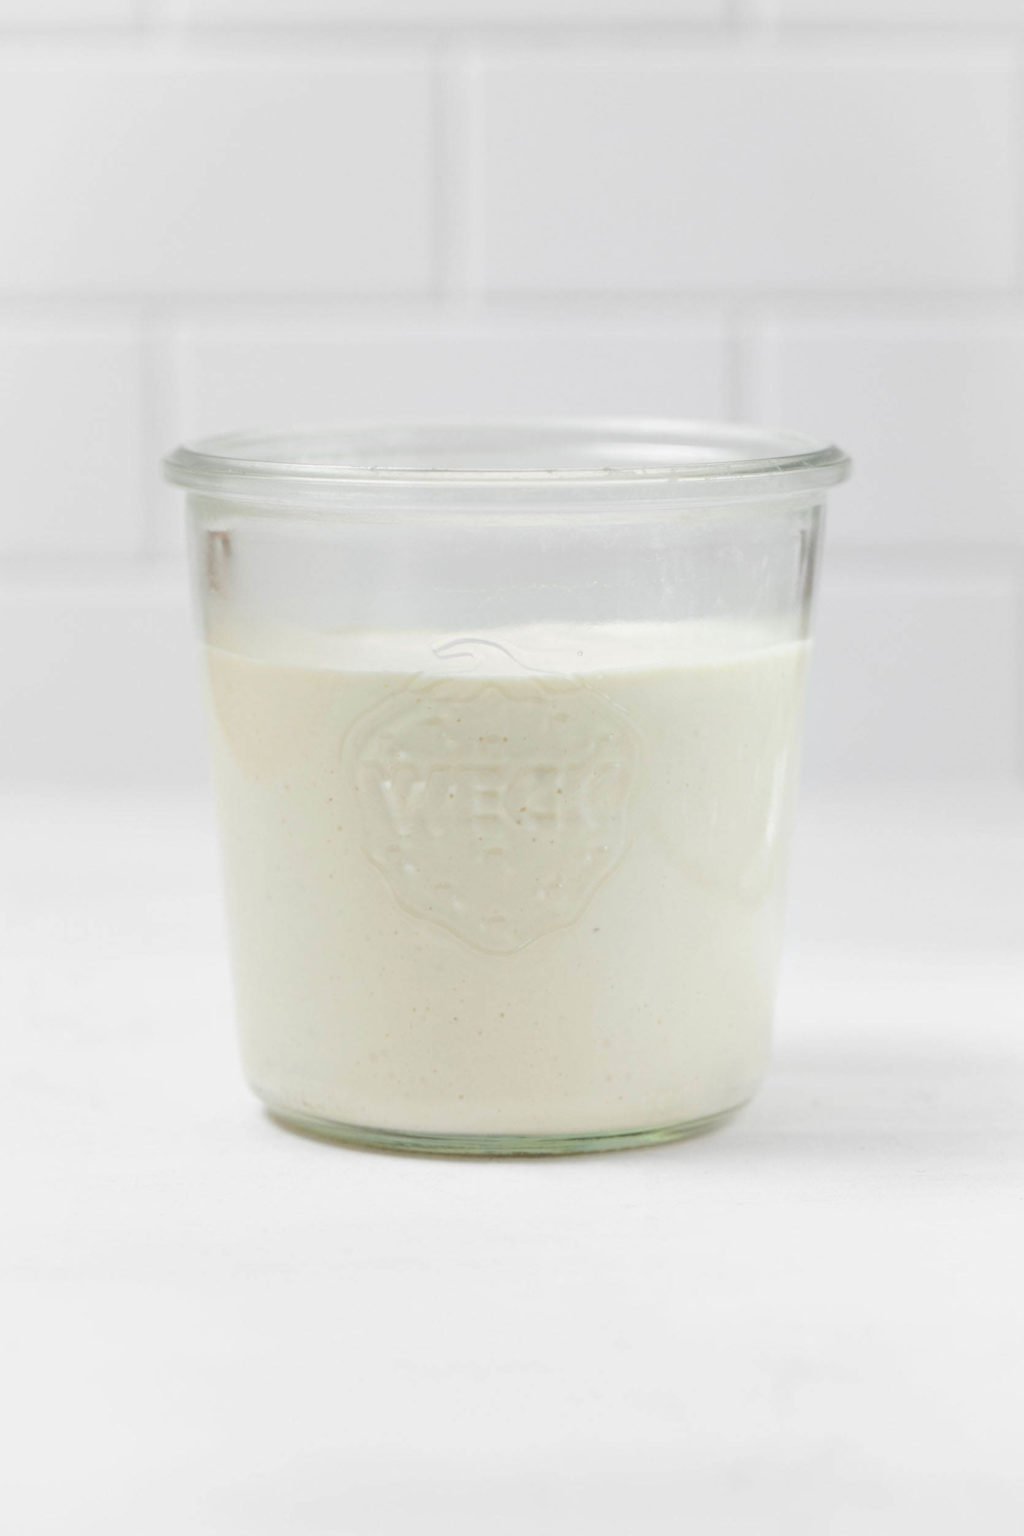 Un frasco de vidrio contiene una crema agria vegana de color blanco cremoso.  Se apoya sobre una superficie blanca.